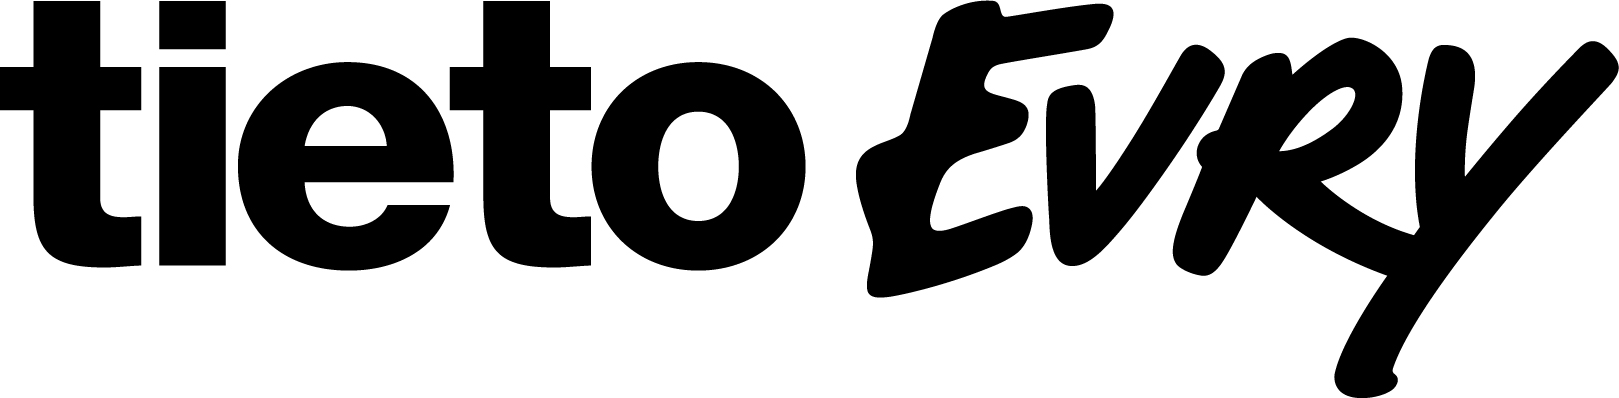 tietoevry-logo-black-rgb_m.jpg (94 KB)